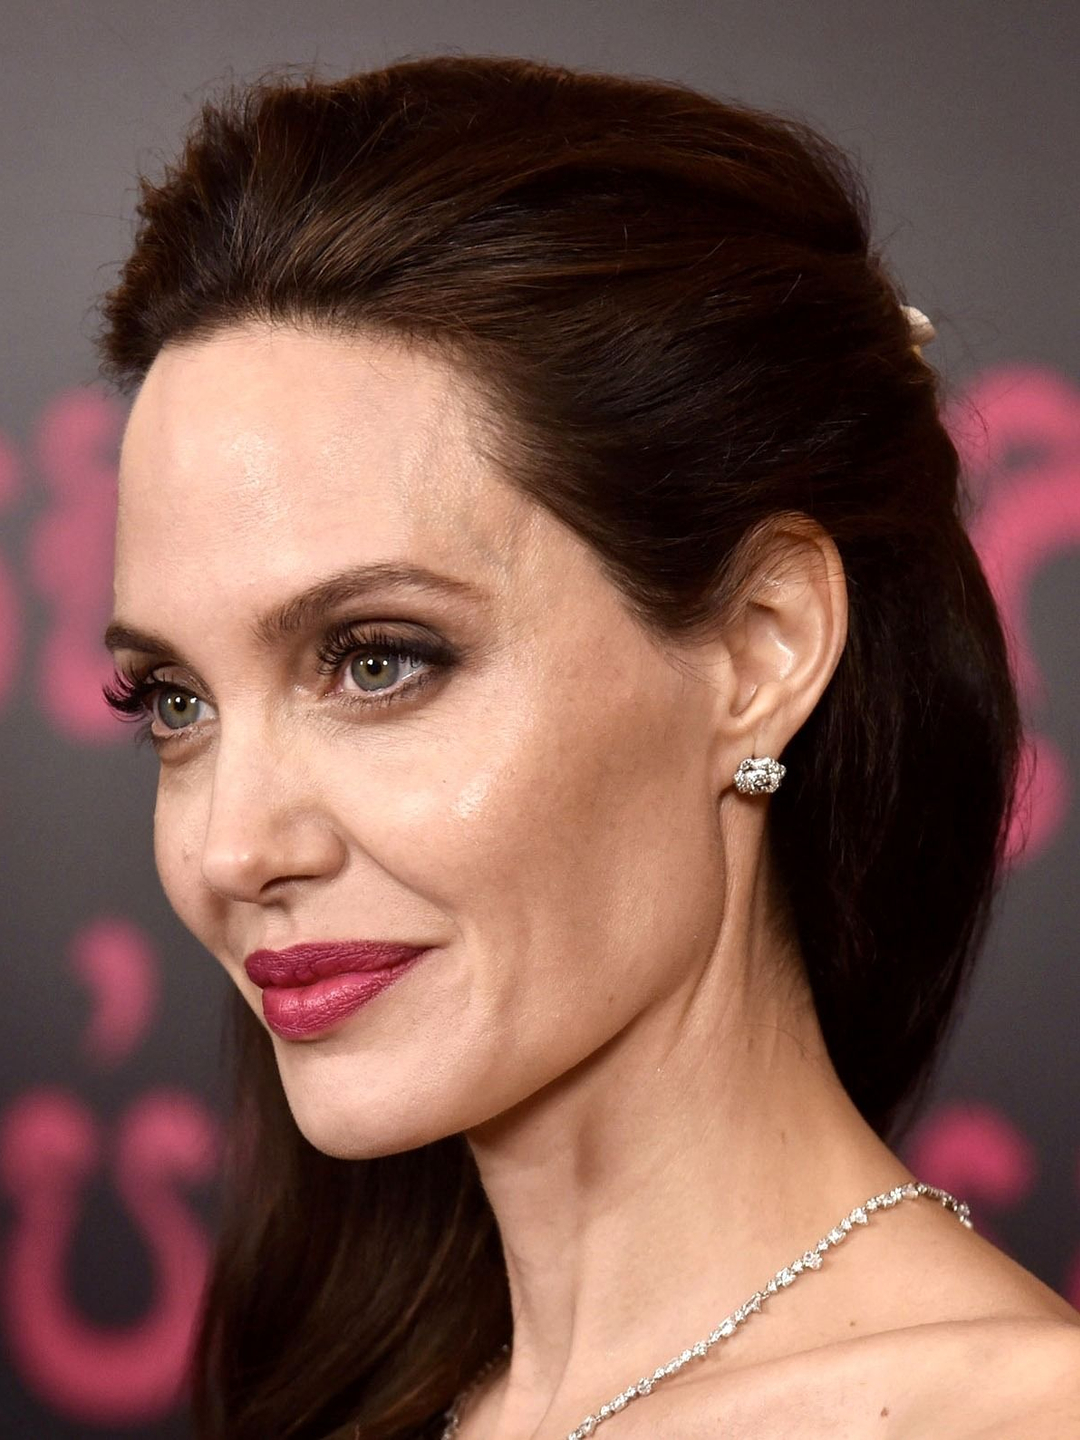 Angelina Jolie who is she